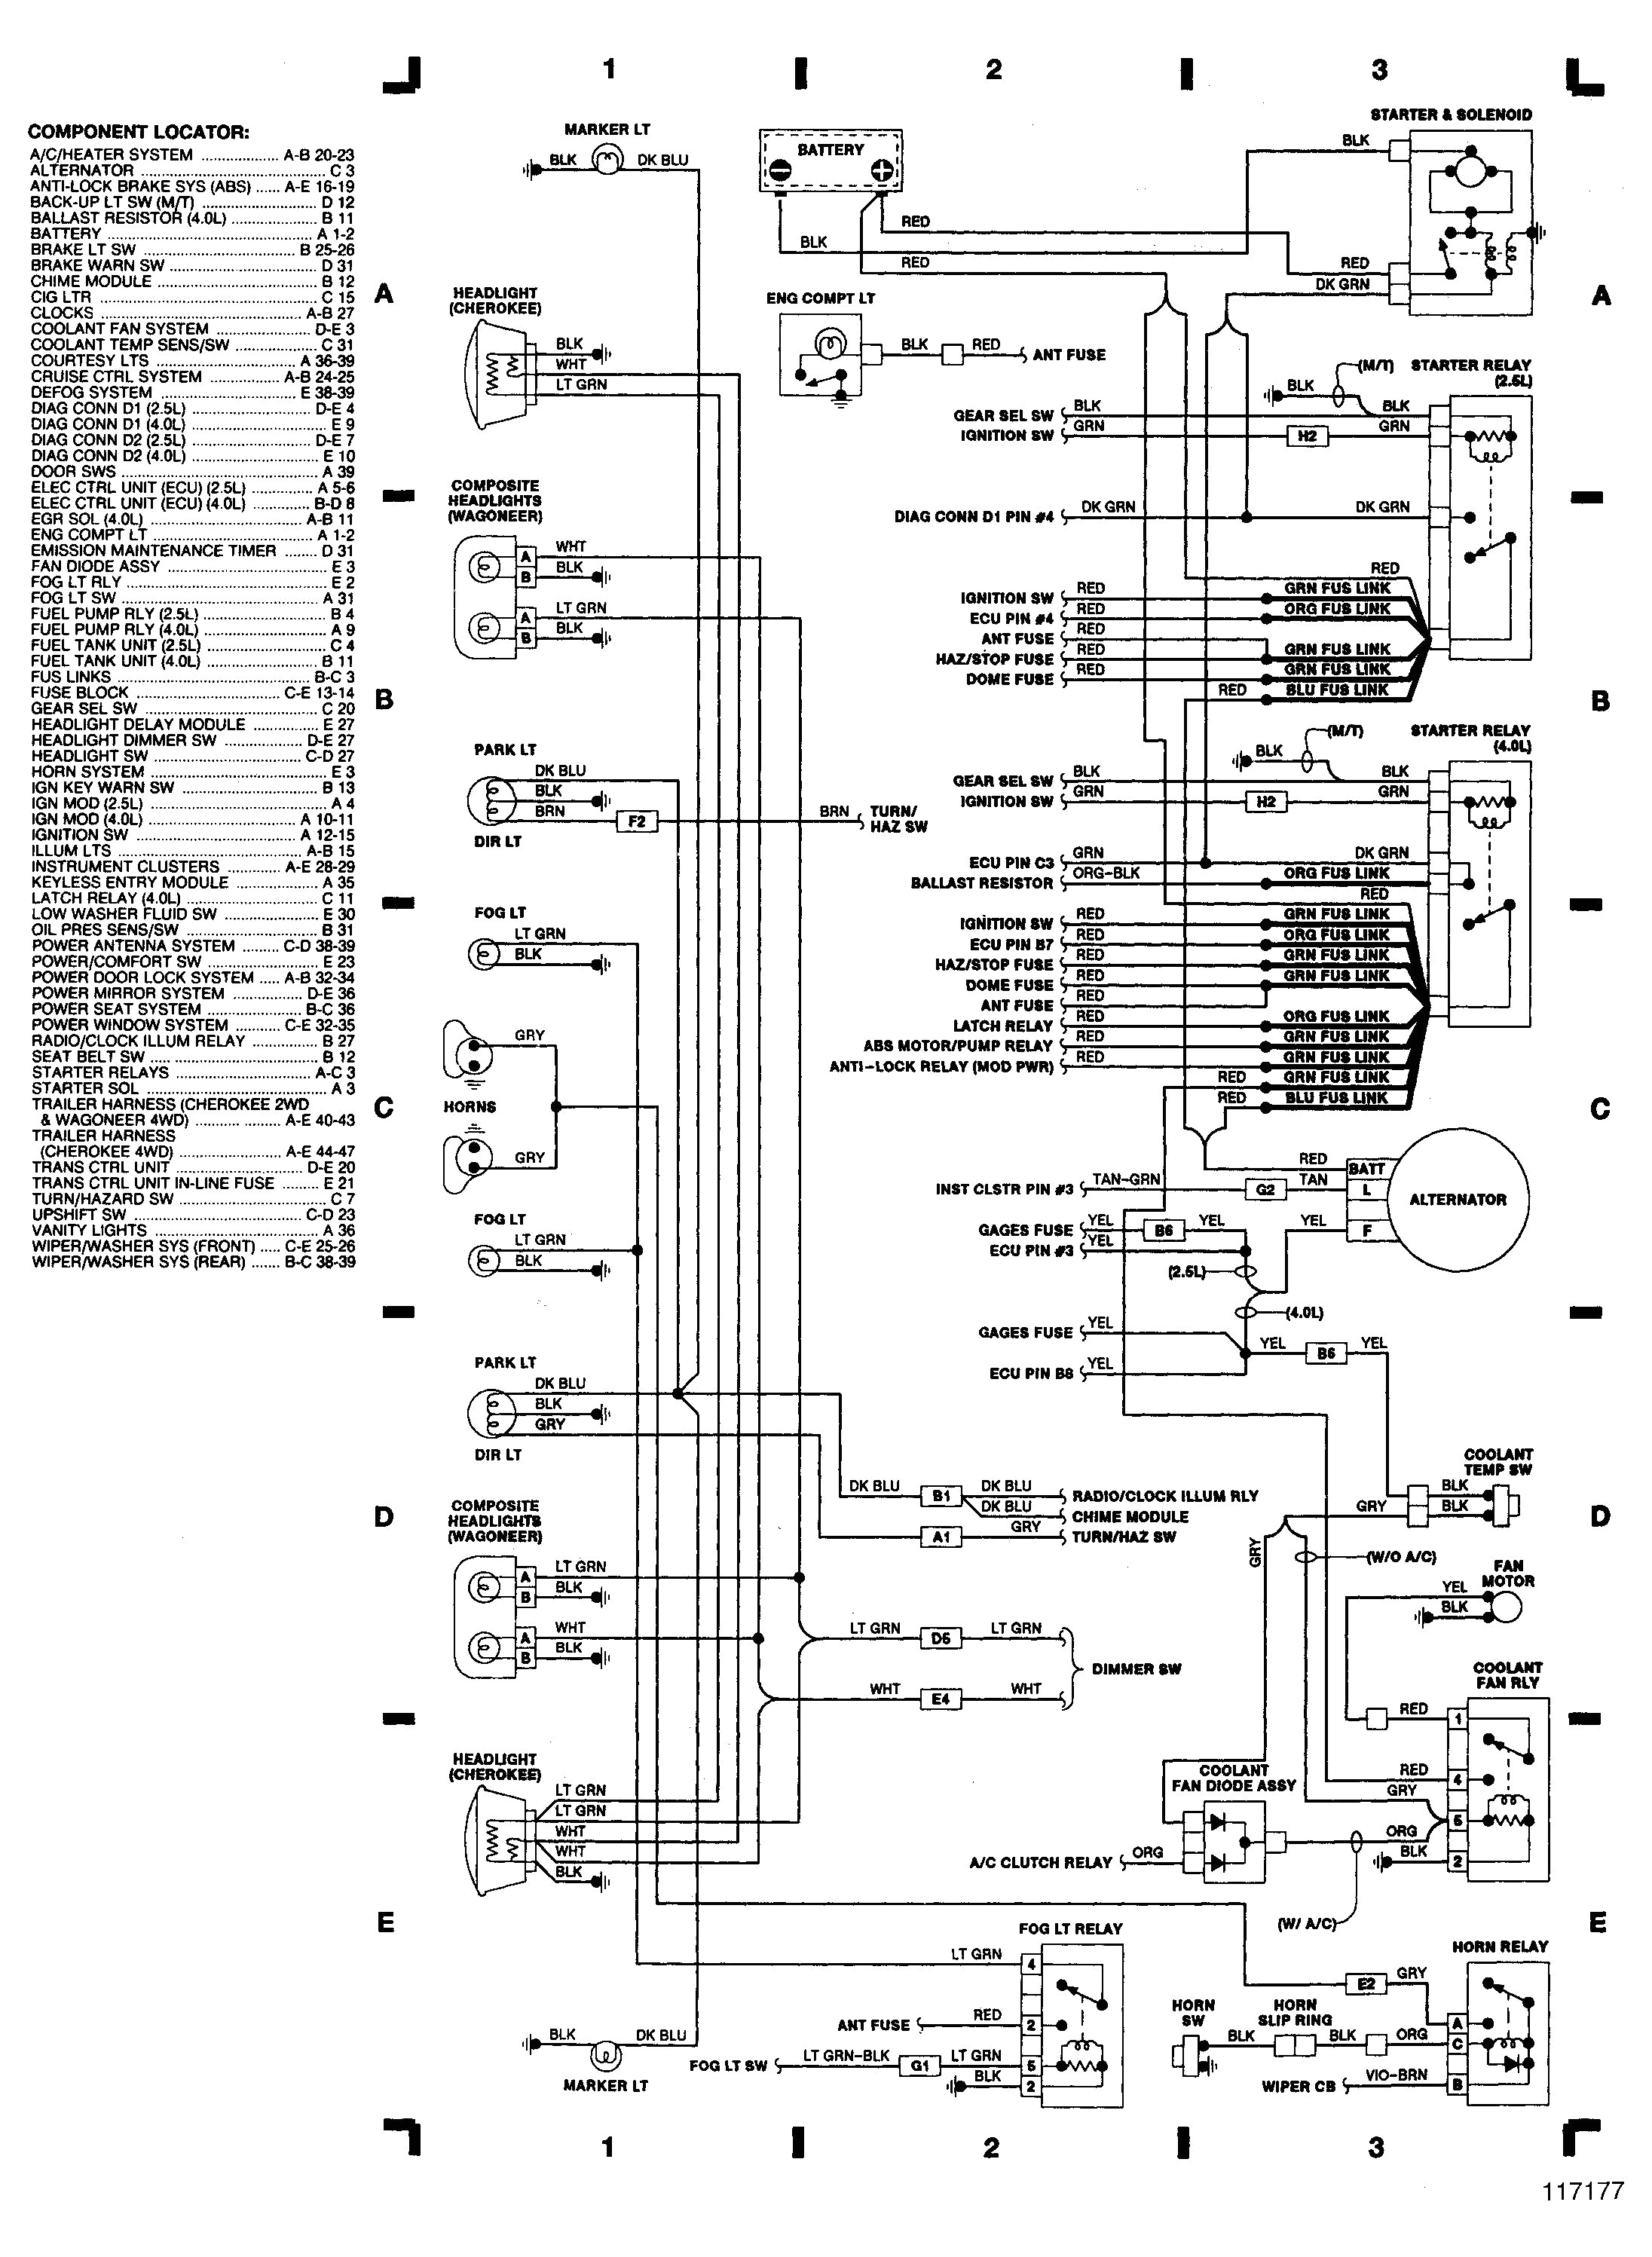 95 jeep grand cherokee wiring diagram simple 1993 jeep cherokee wiring diagram of 95 jeep grand cherokee wiring diagram jpg